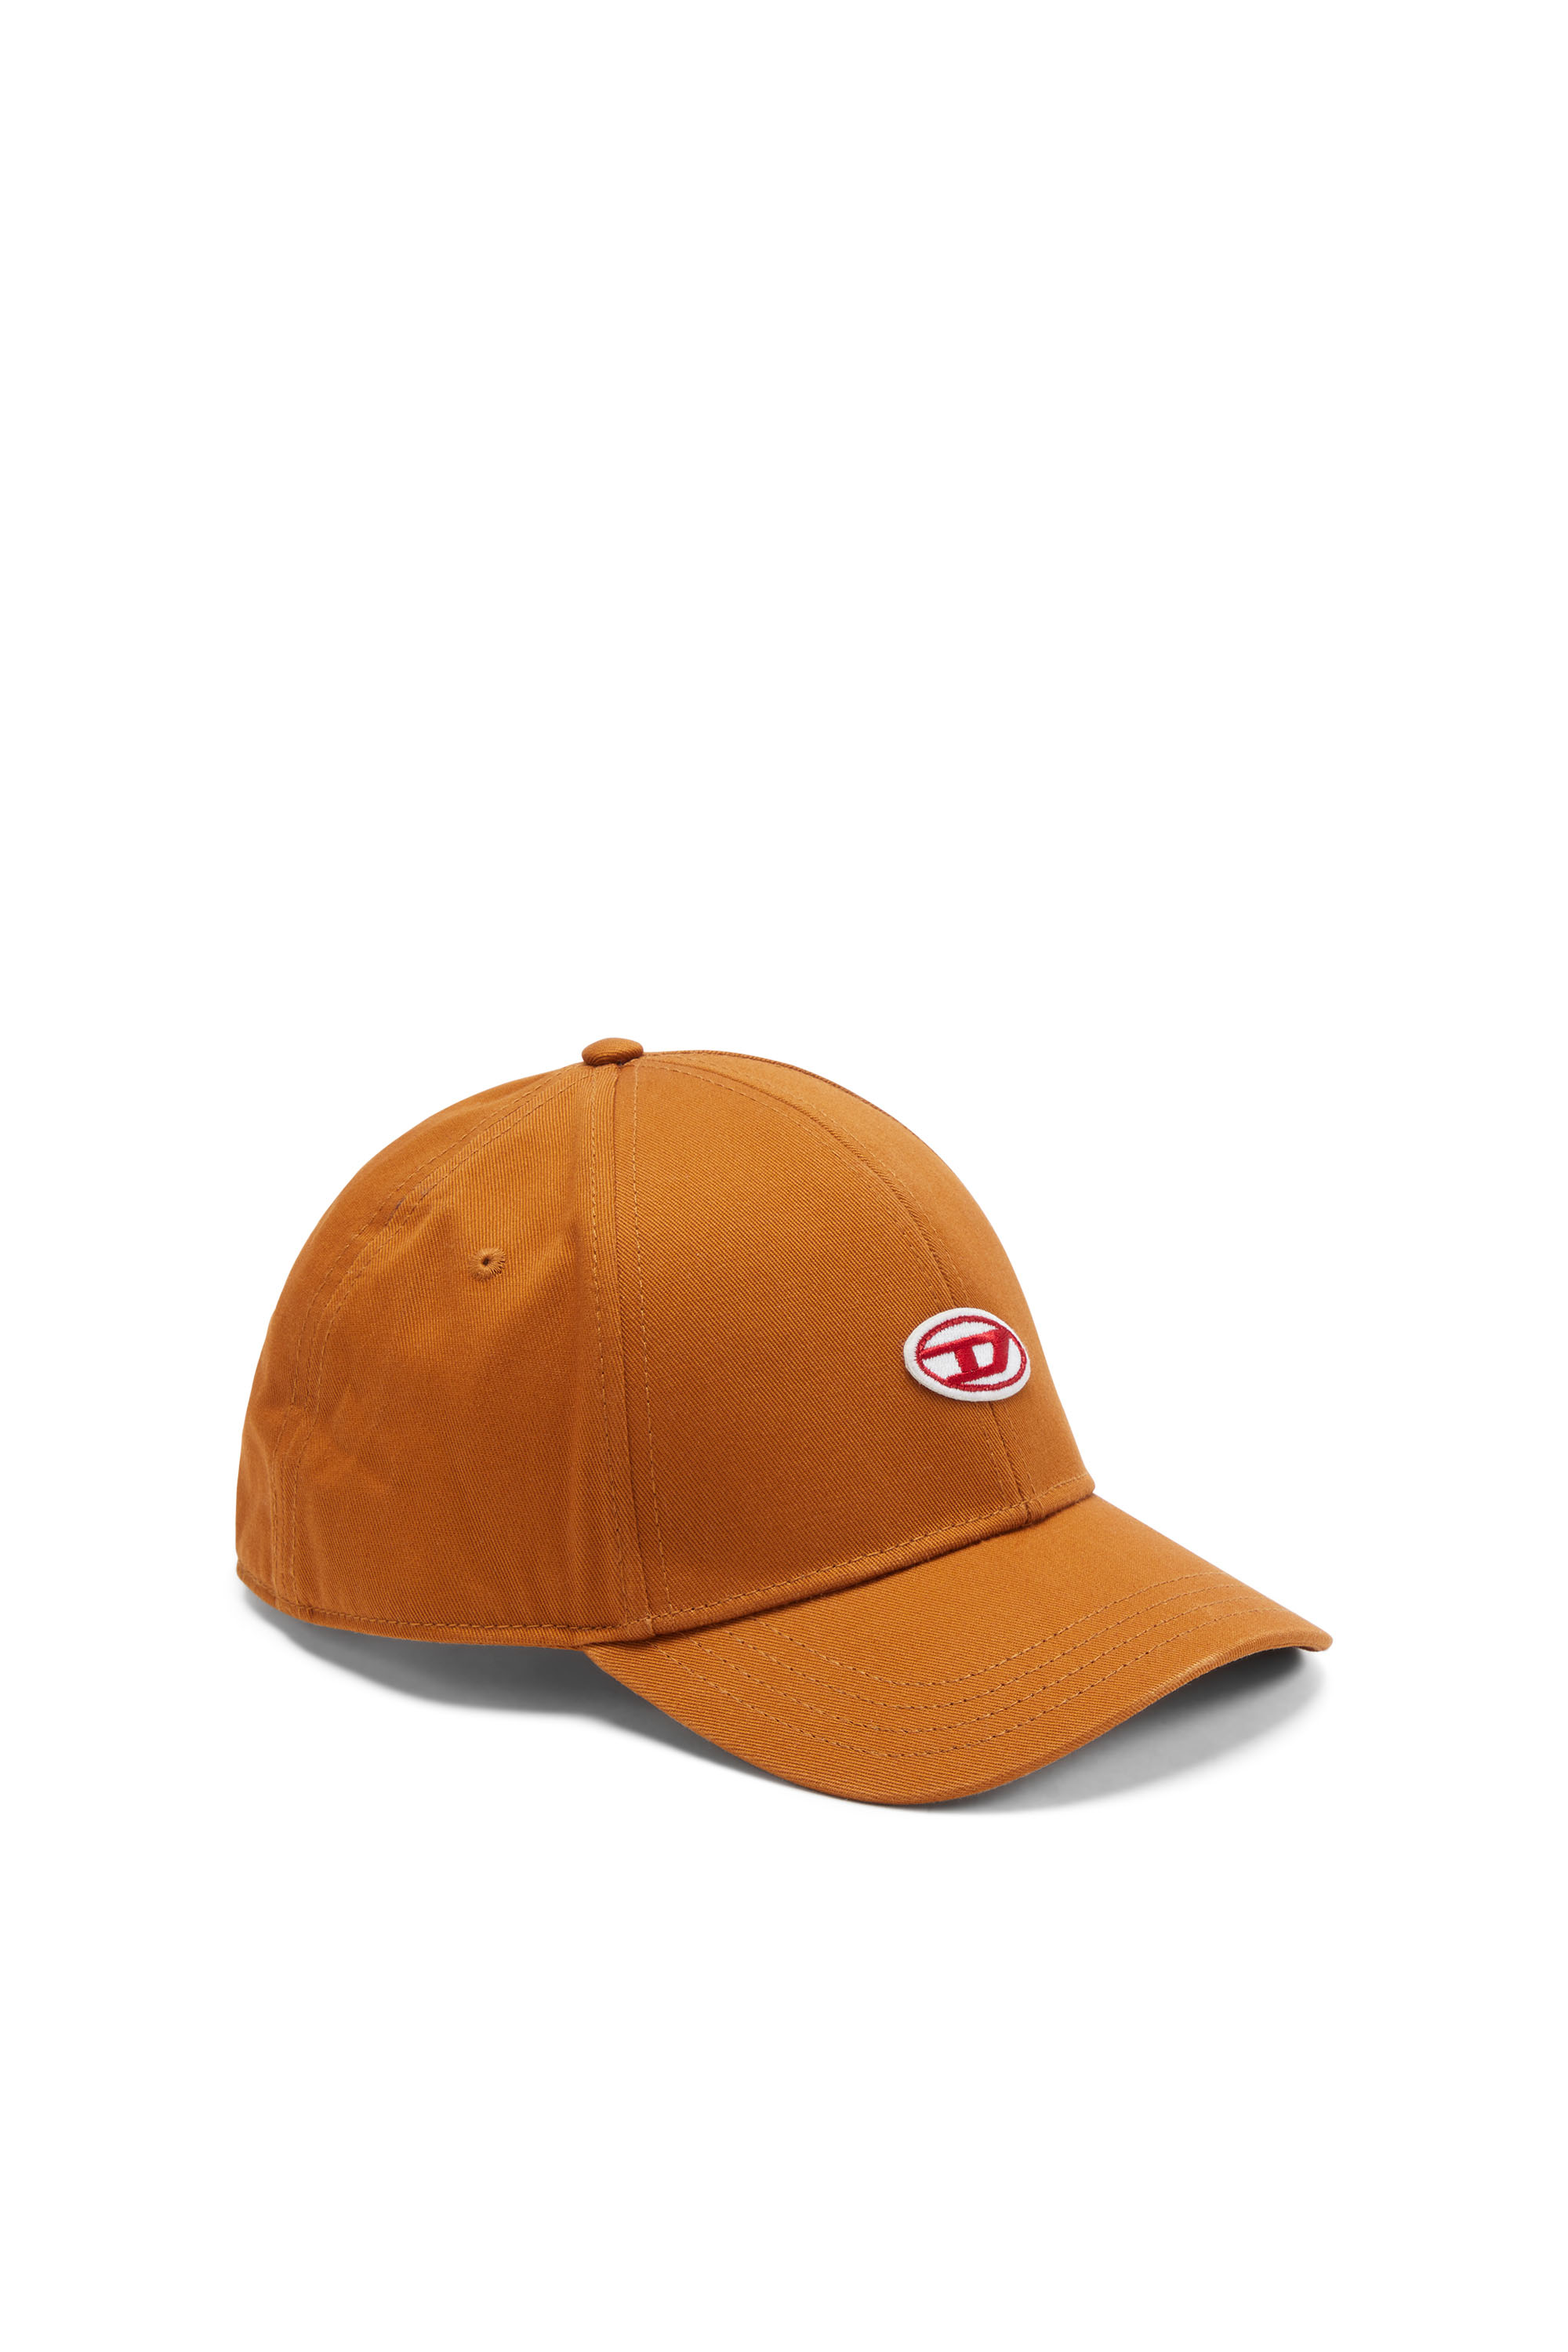 Diesel - Berretto da baseball con applicazione con D ricamata - Cappelli - Uomo - Arancione